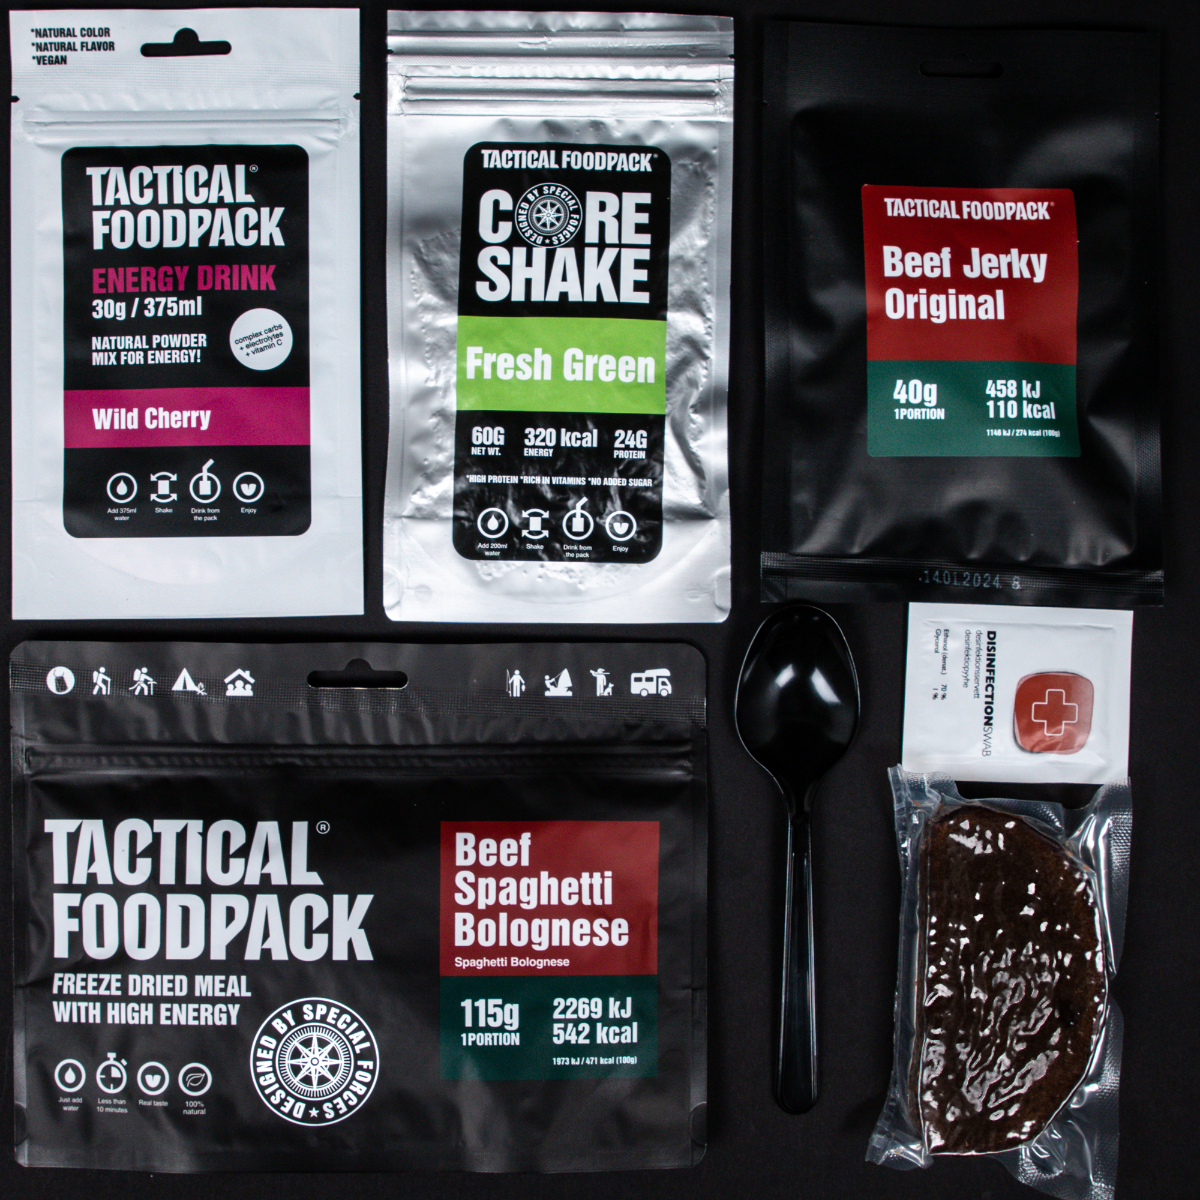 Tactical Foodpack MRE paket "1 Taktični dnevni obrok ECHO Tactical Foodpack": Vrhunska liofilizirana vojaška hrana za prehranjevanje na prostem. Dolgotrajna obstojnost, visoka hranilna vrednost. Idealna za pohodništvo, kampiranje in aktivnosti na prostem. Pridobite svoj obrok v sili za preživetje!